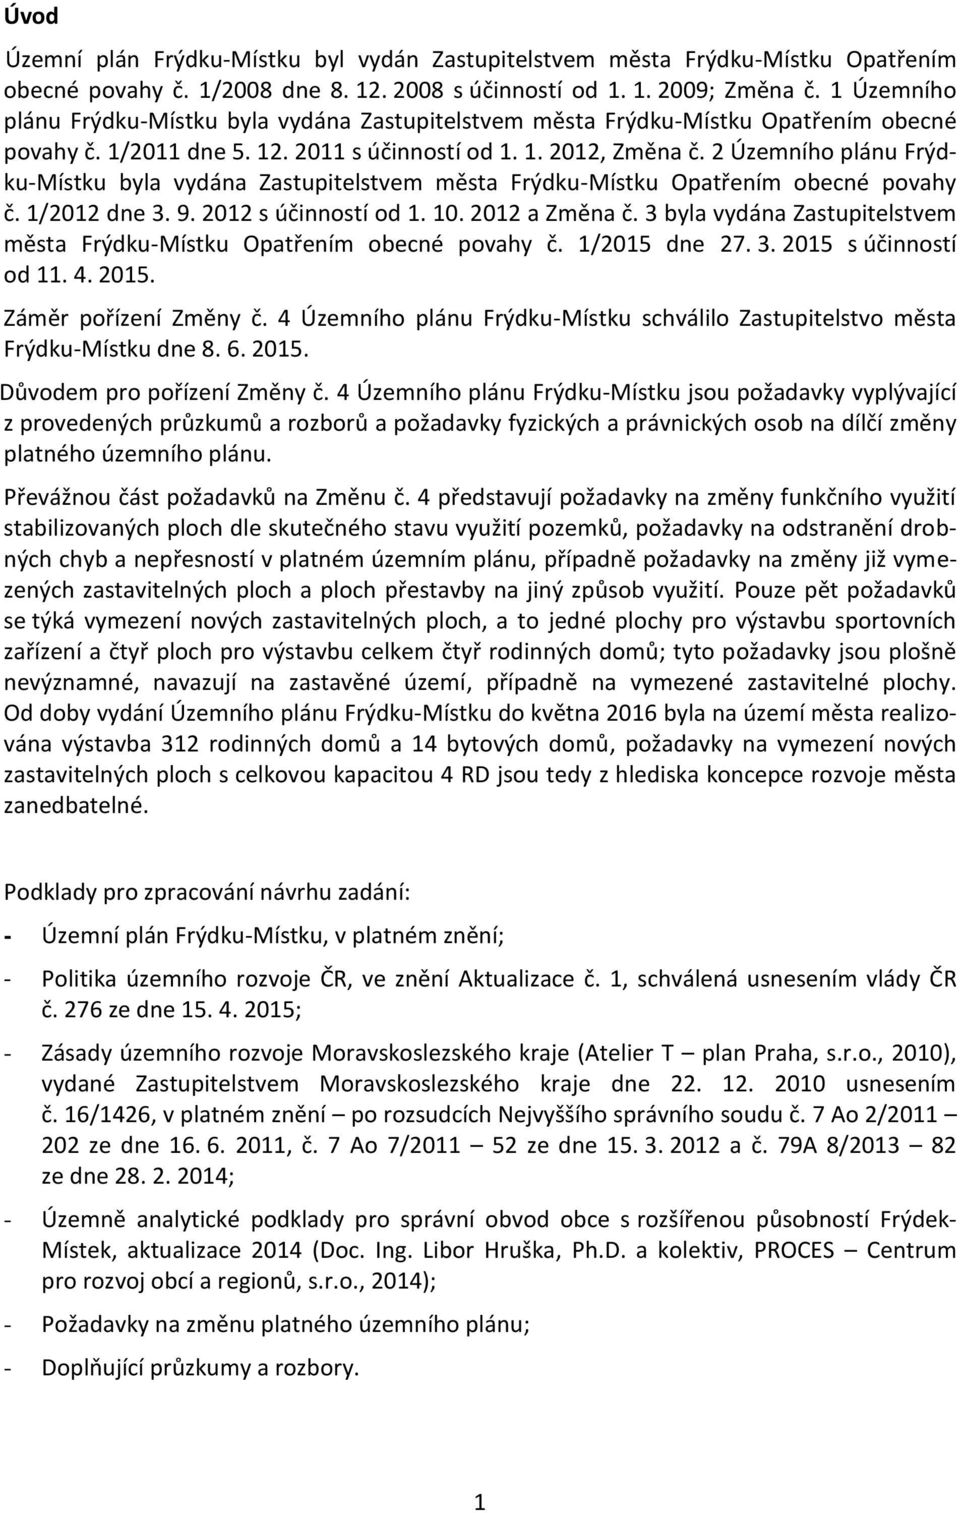 2 Územního plánu Frýdku-Místku byla vydána Zastupitelstvem města Frýdku-Místku Opatřením obecné povahy č. 1/2012 dne 3. 9. 2012 s účinností od 1. 10. 2012 a Změna č.